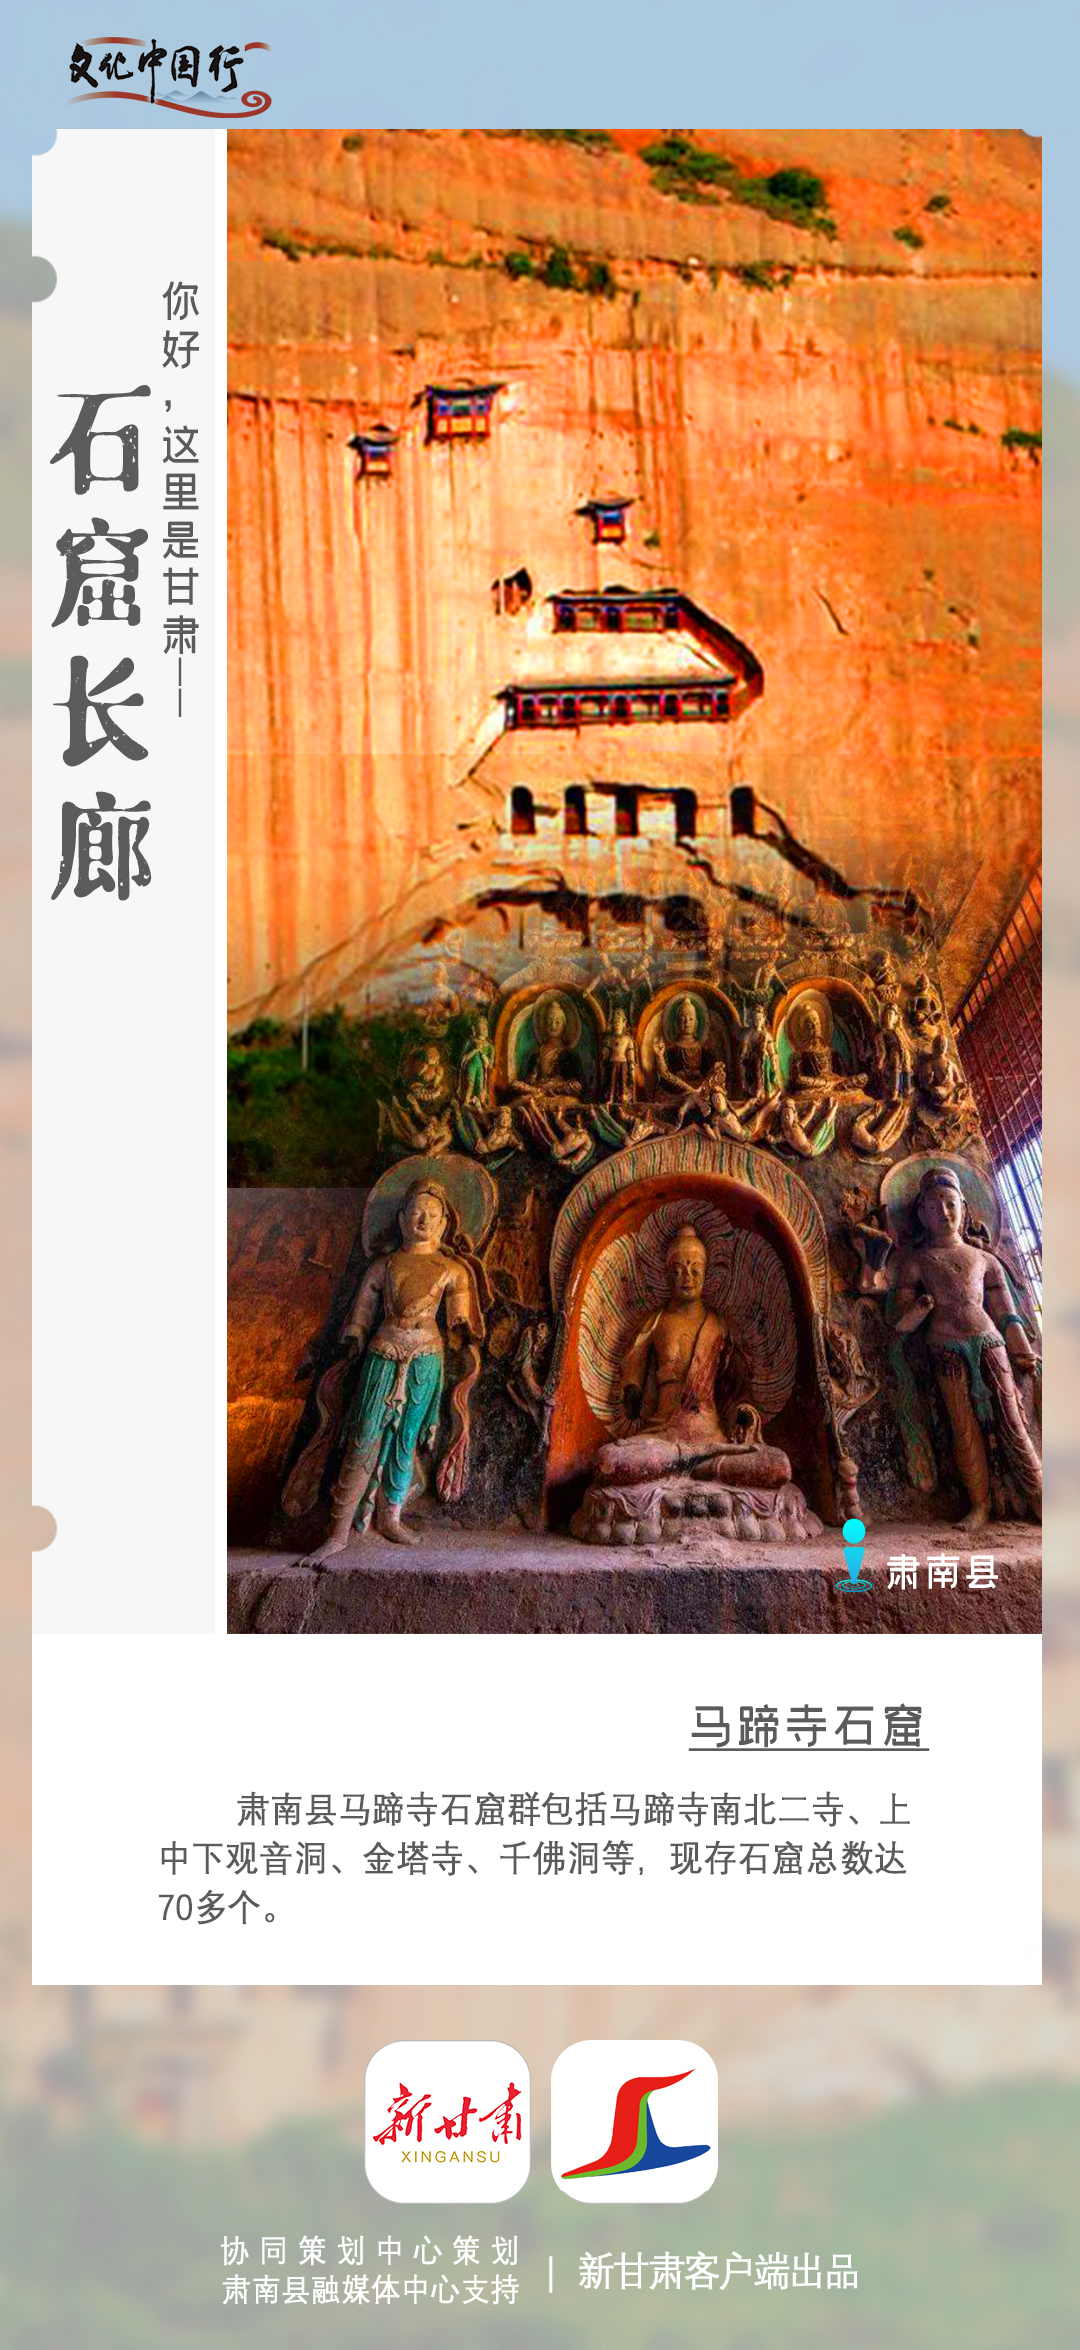 【文化中国行】你好,这里是甘肃美轮美奂的石窟长廊